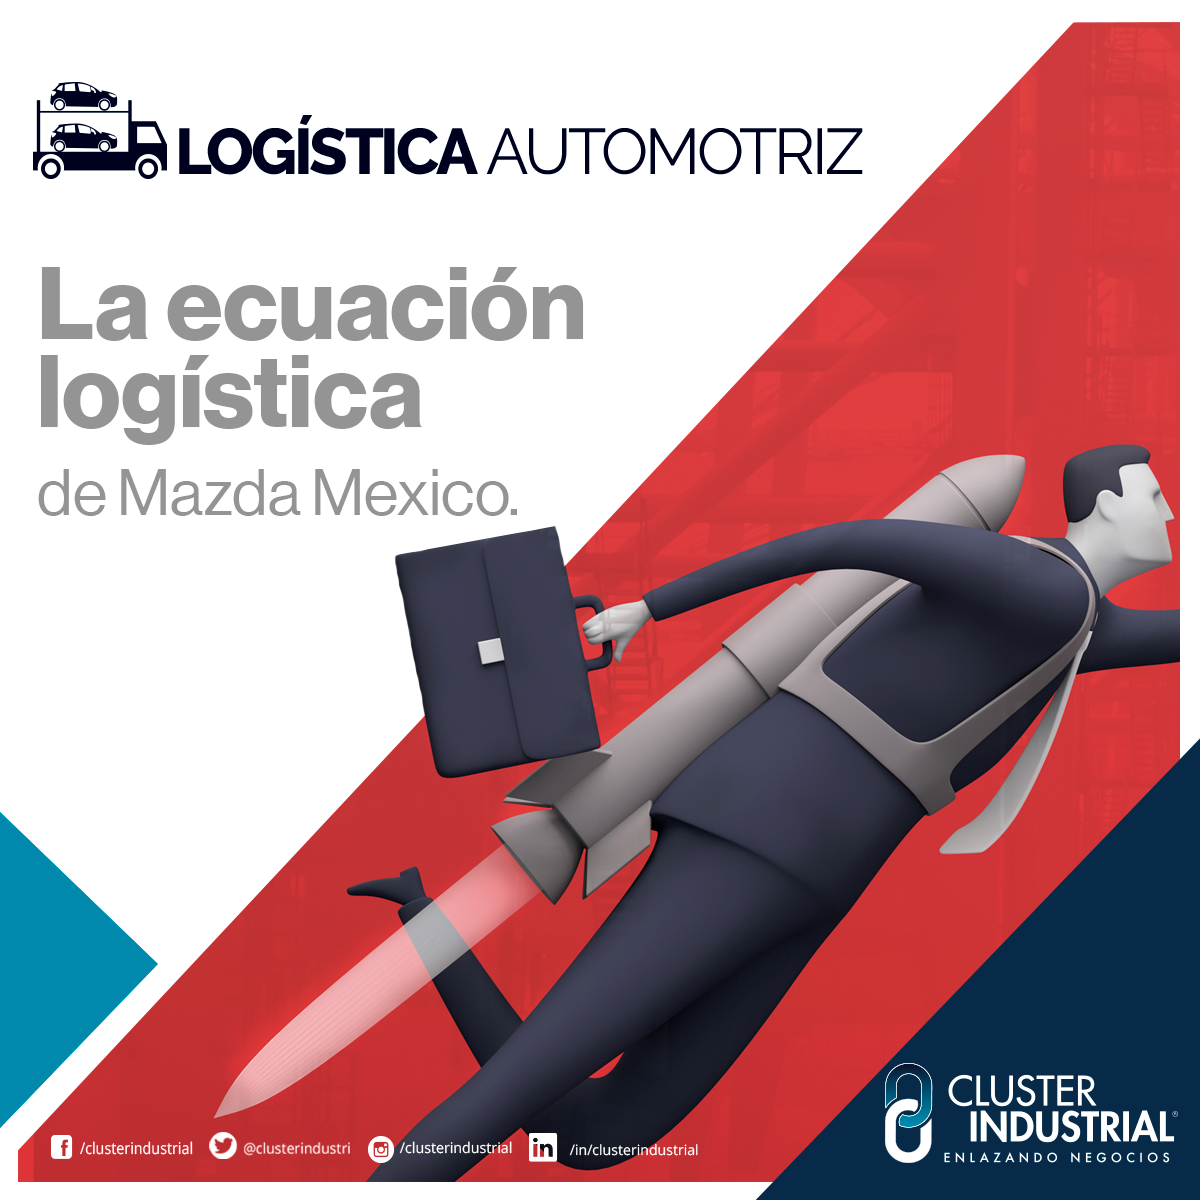 Cluster Industrial - La ecuación logística de Mazda México 